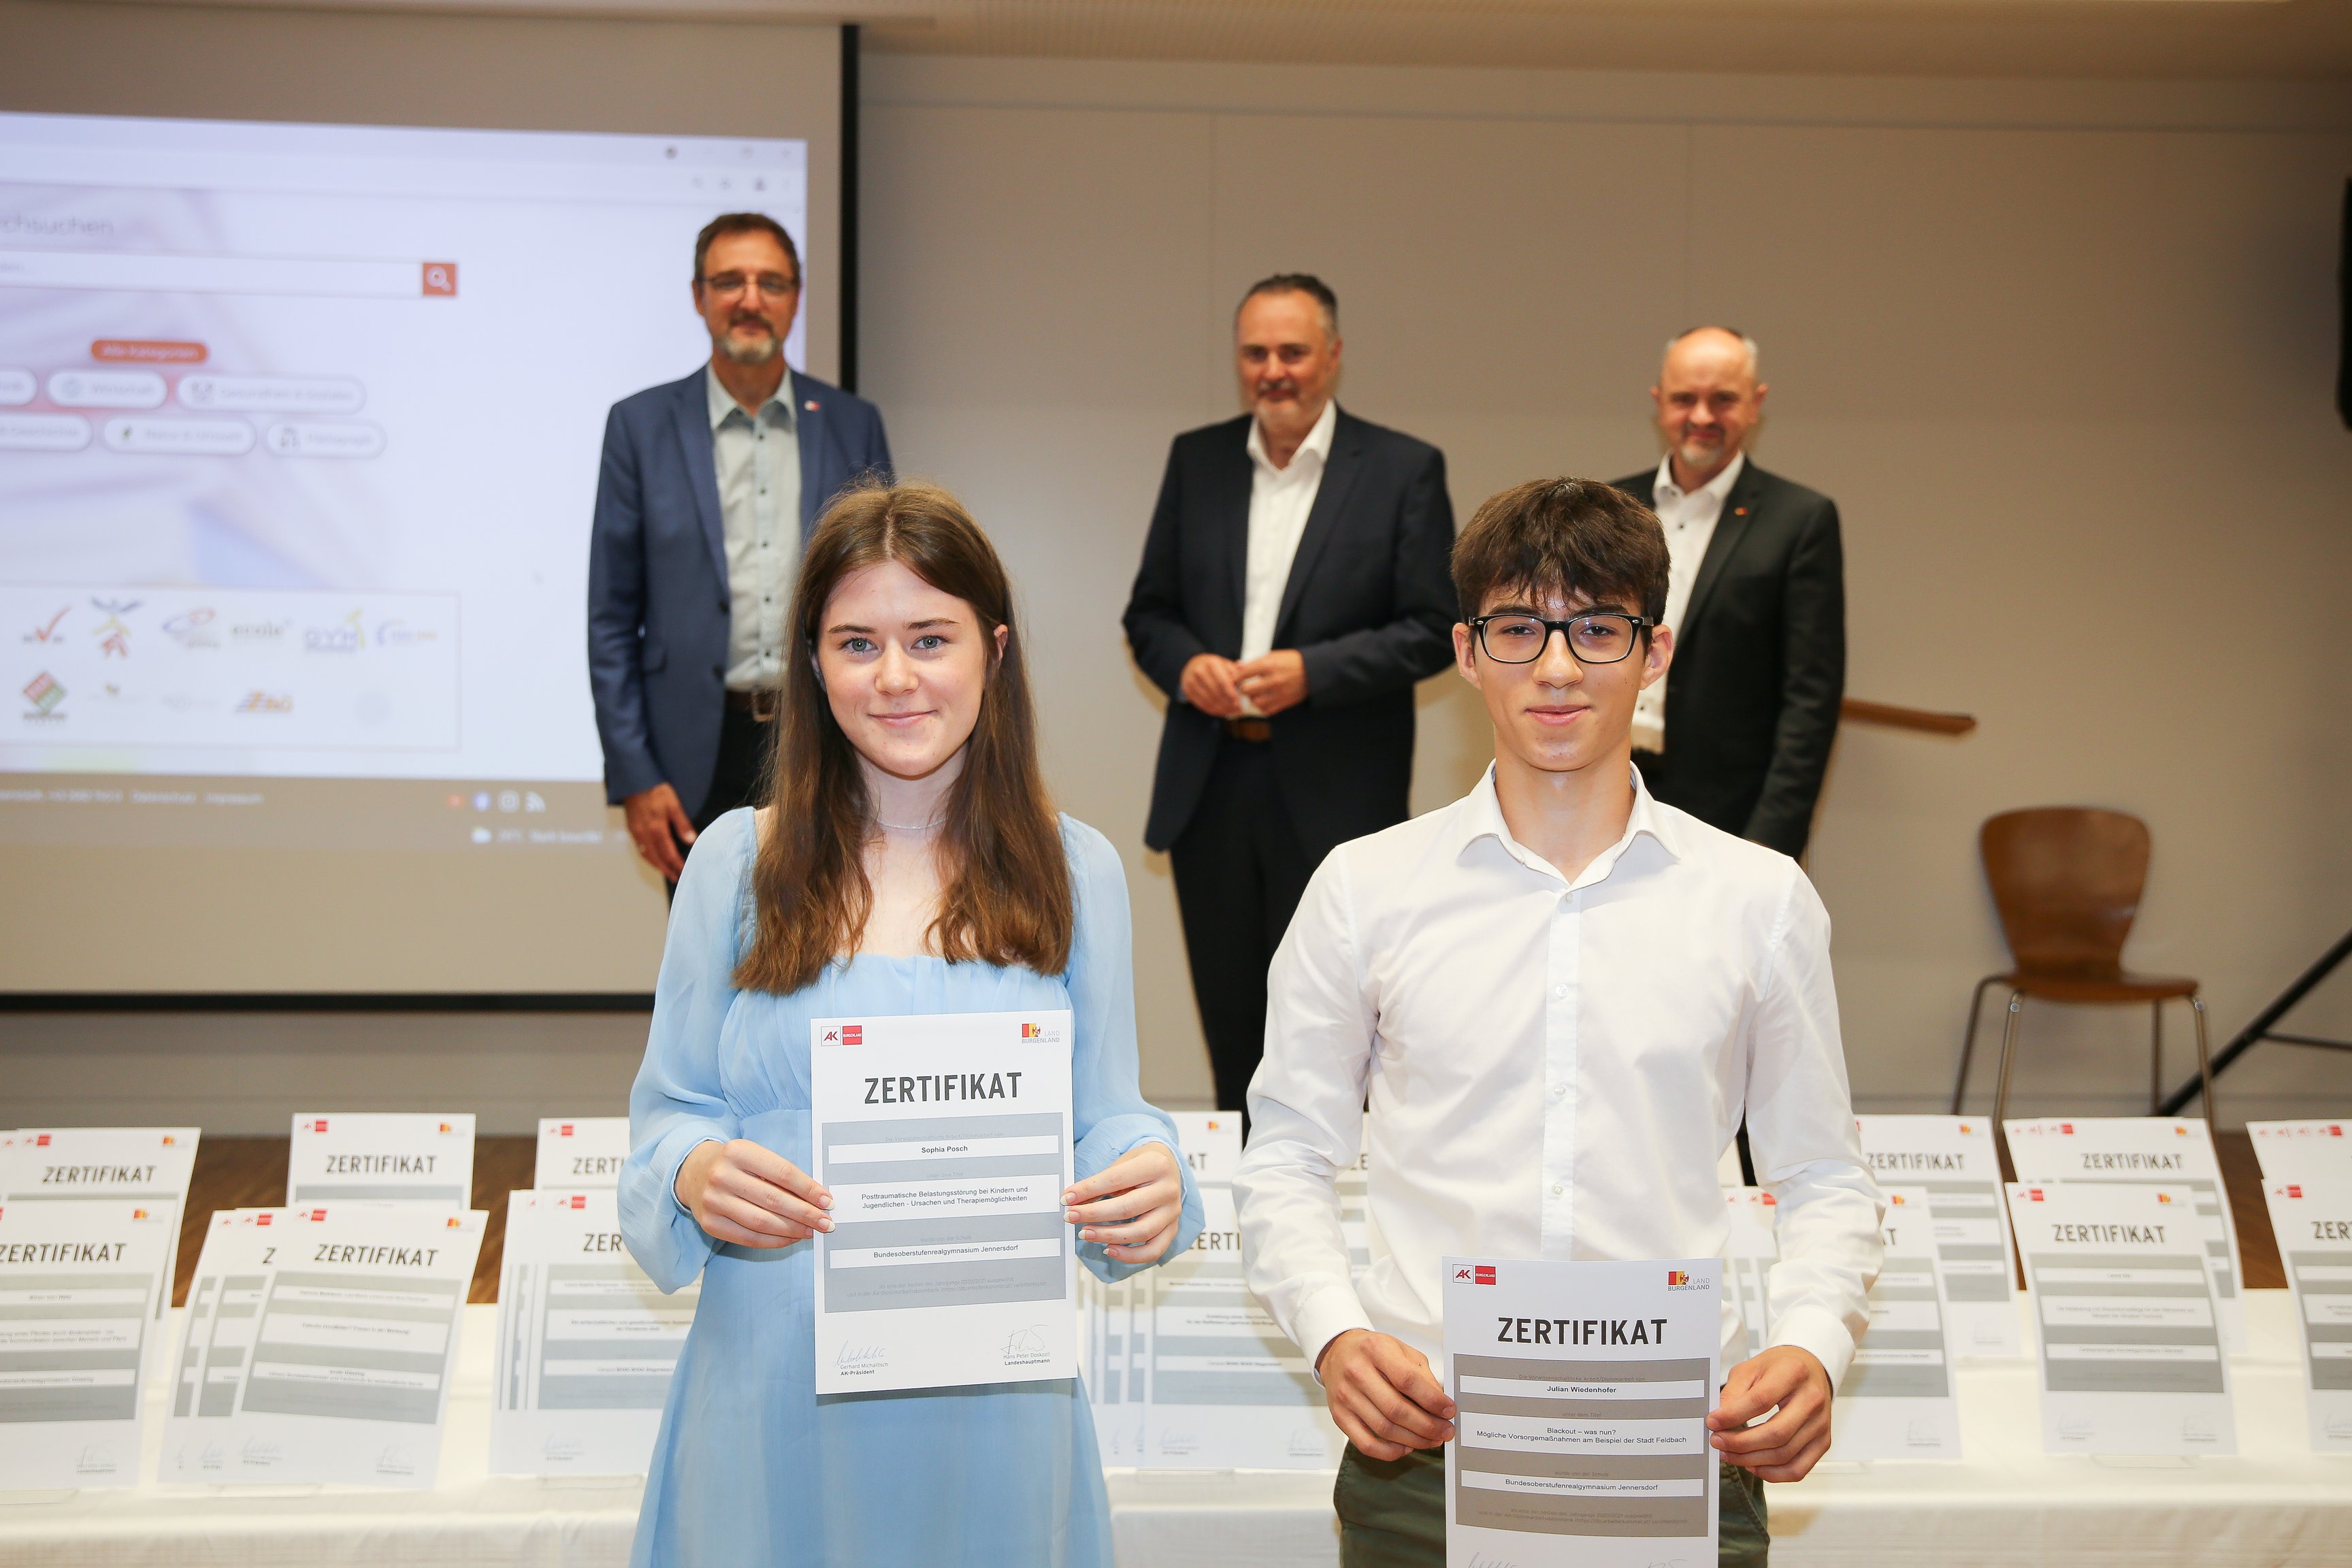 SchülerInnen der Schule "BORG Jennersdorf" erhalten Zertifikat für ihre schriftliche Arbeit "Posttraumatische Belastungsstörung bei Kindern und Jugendlichen - Ursachen und Therapiemöglichkeiten".